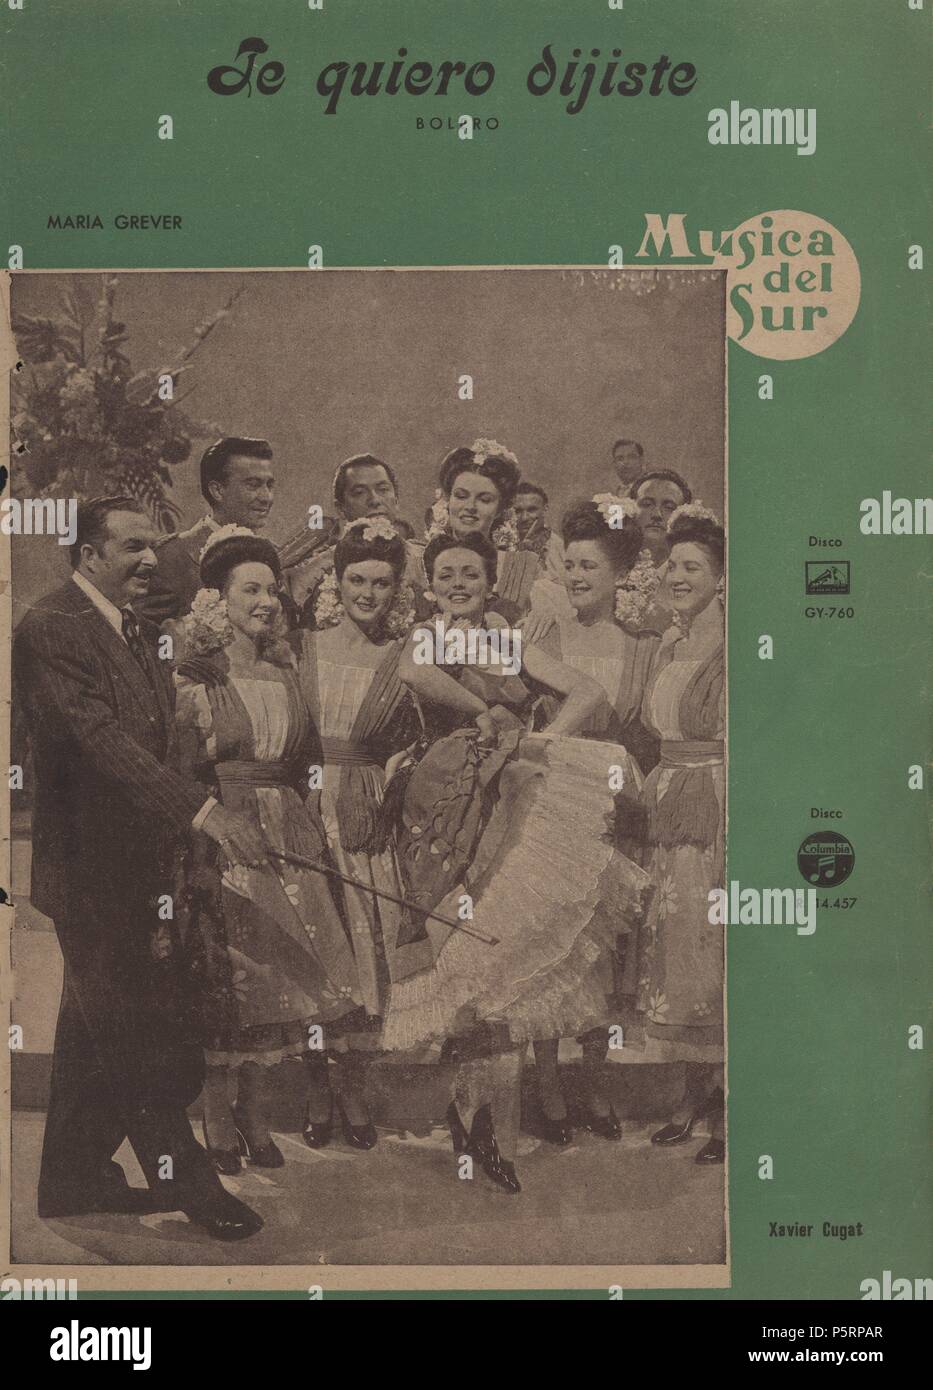 Partitura musical y cancionero. Te quiero, dijiste, bolero de María Grever, interpretado por la orquesta de Xavier Cugat. Barcelona, 1946. Stock Photo